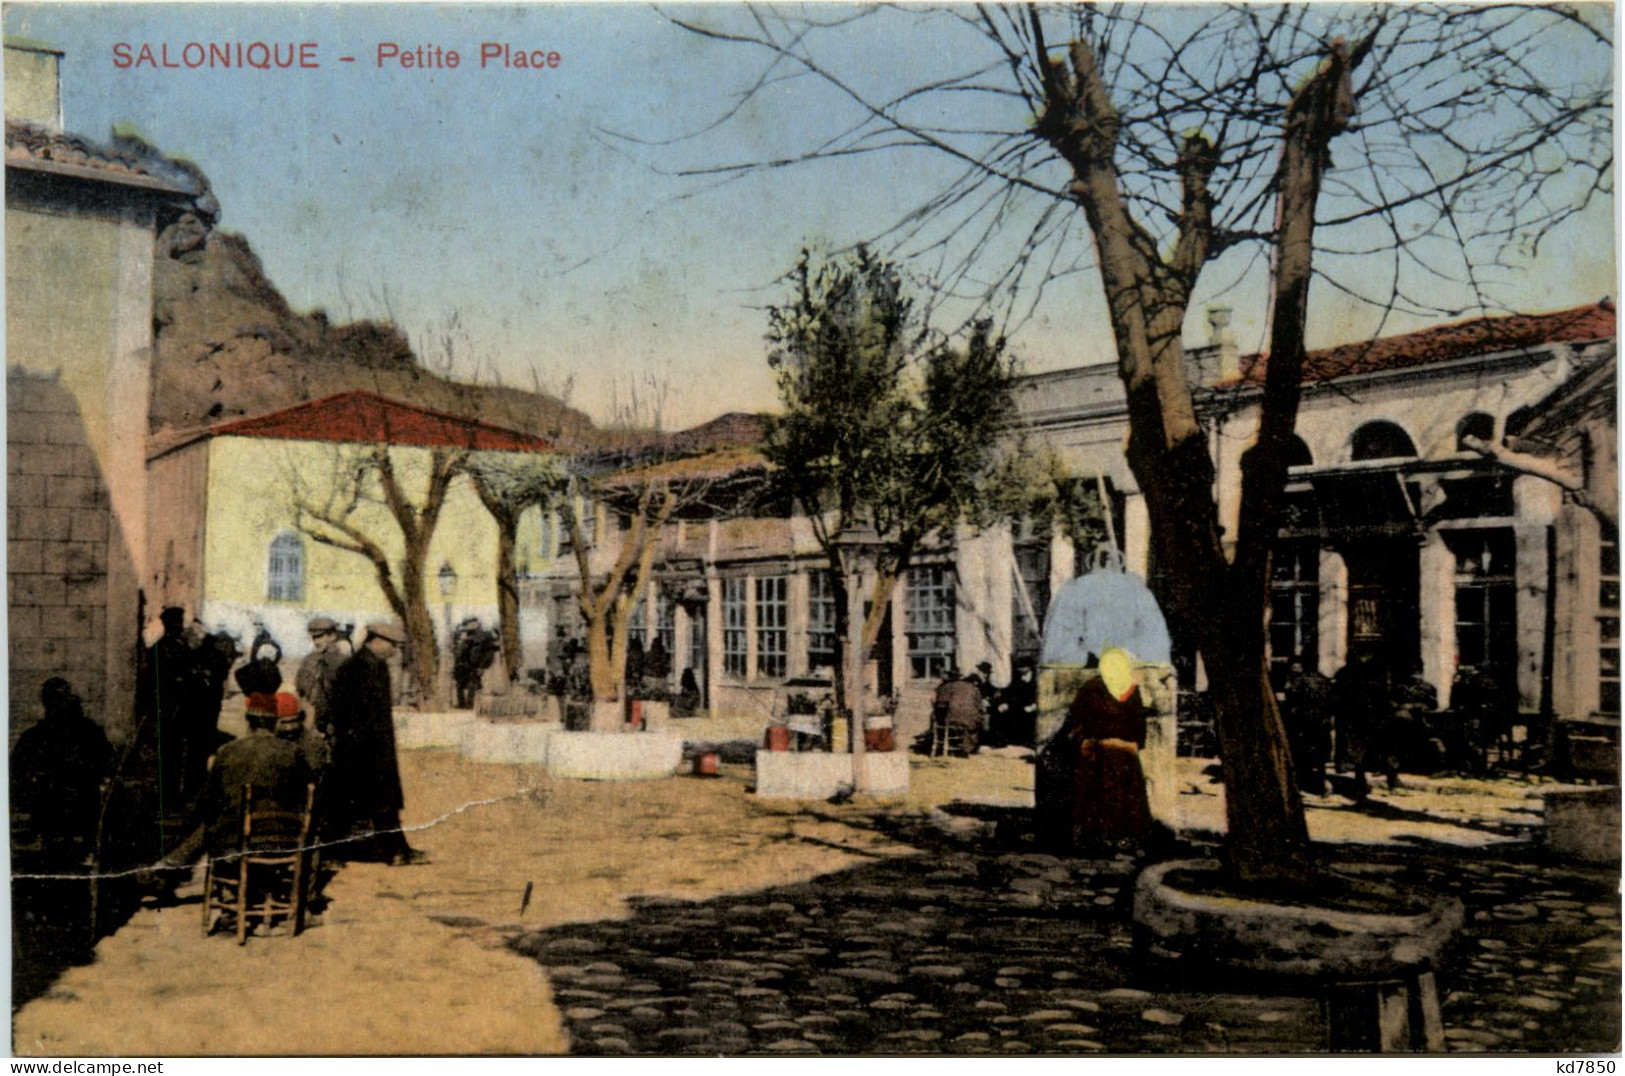 Salonique - Petite Place - Griechenland